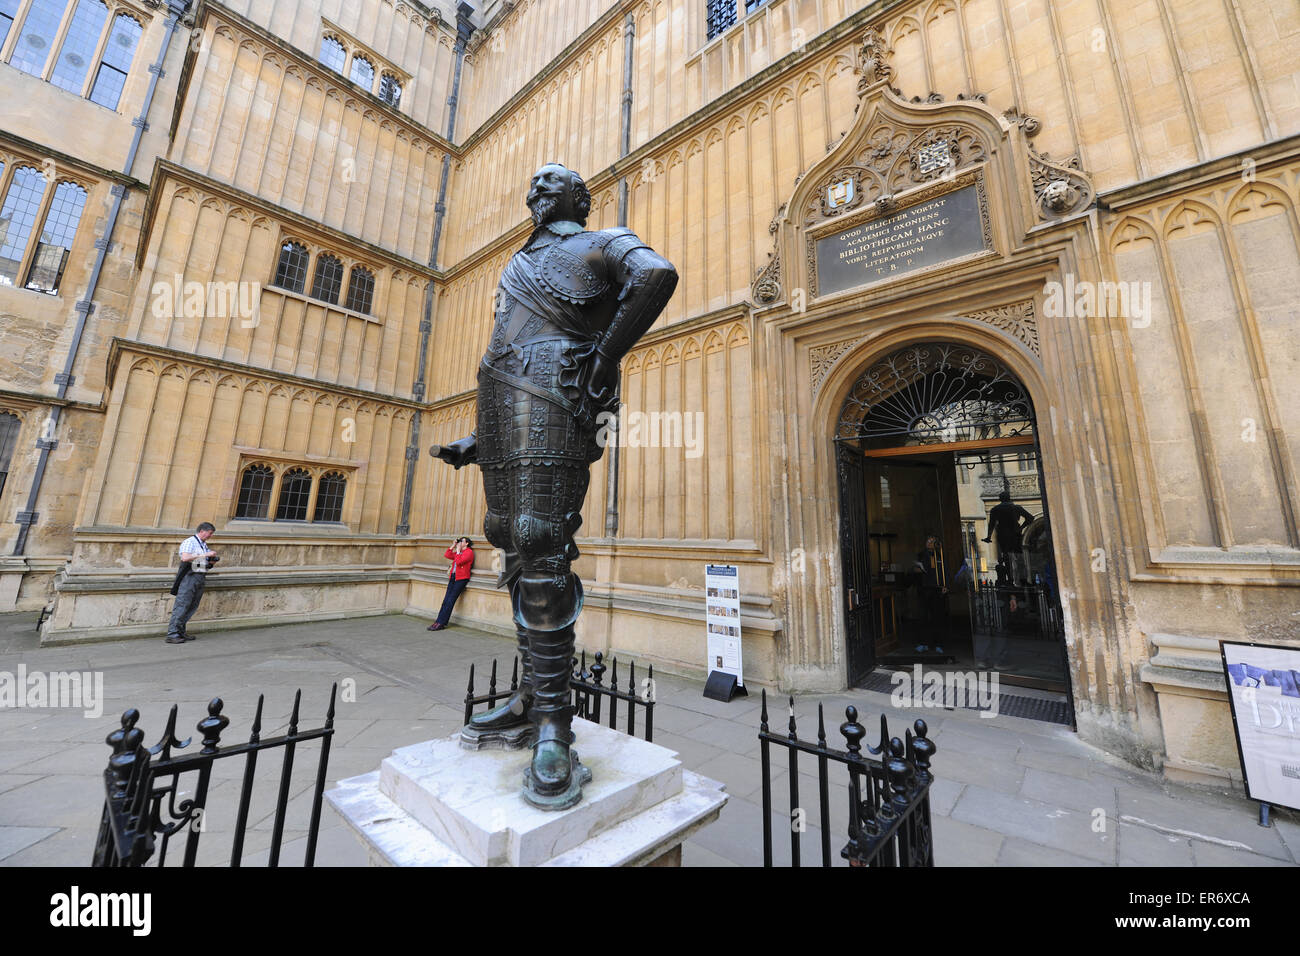 Statue du Comte de Pembroke à l'ancienne école Quadrangle, Bodleian Library, qui fait partie de l'Université d'Oxford, en Angleterre. Banque D'Images